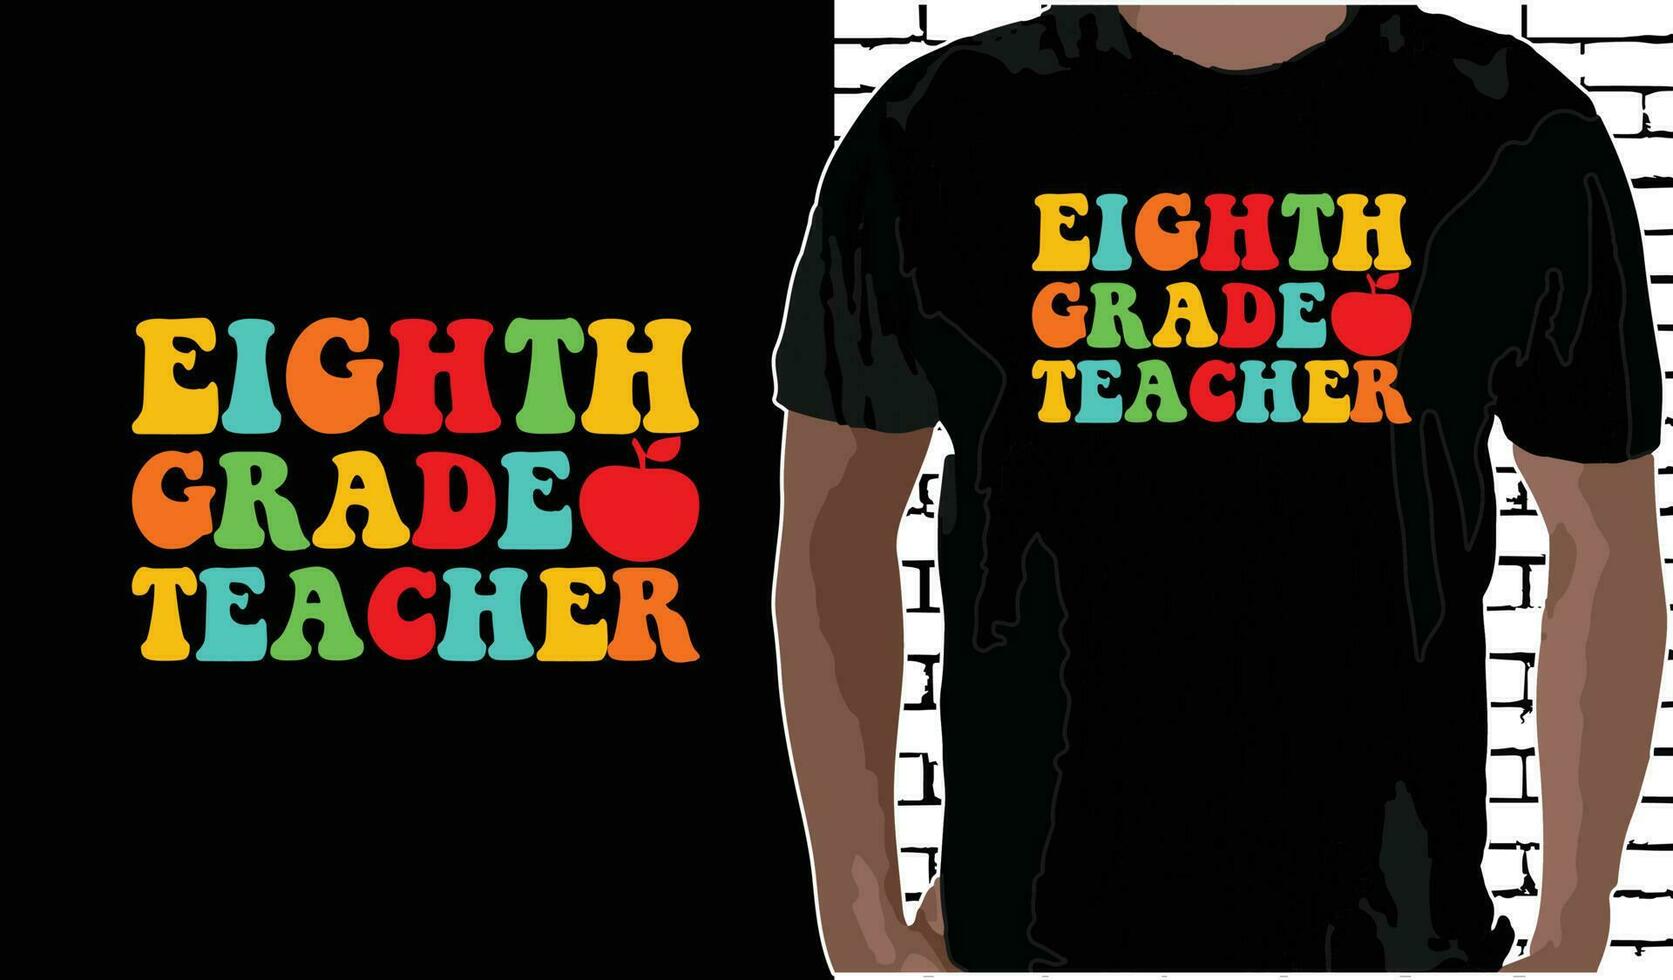 8:e kvalitet lärare t skjorta design, citat handla om tillbaka till skola, tillbaka till skola skjorta, tillbaka till skola typografi t skjorta design vektor